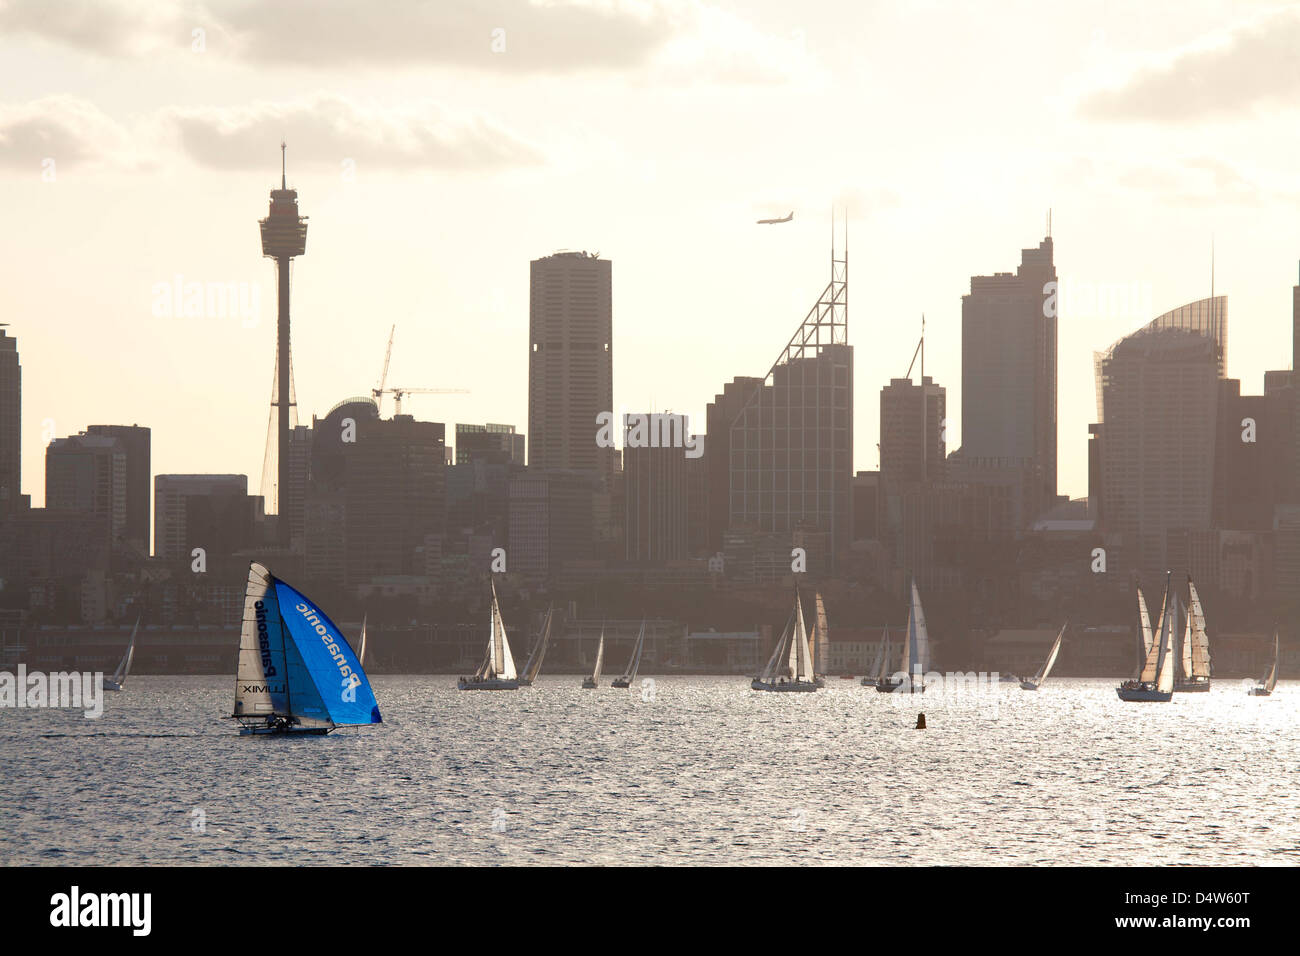 18 Il piè di pagina con lo spinnaker in competizione in una regata nautica sul Porto di Sydney Sydney Australia nella parte anteriore del Sydney CBD. Foto Stock